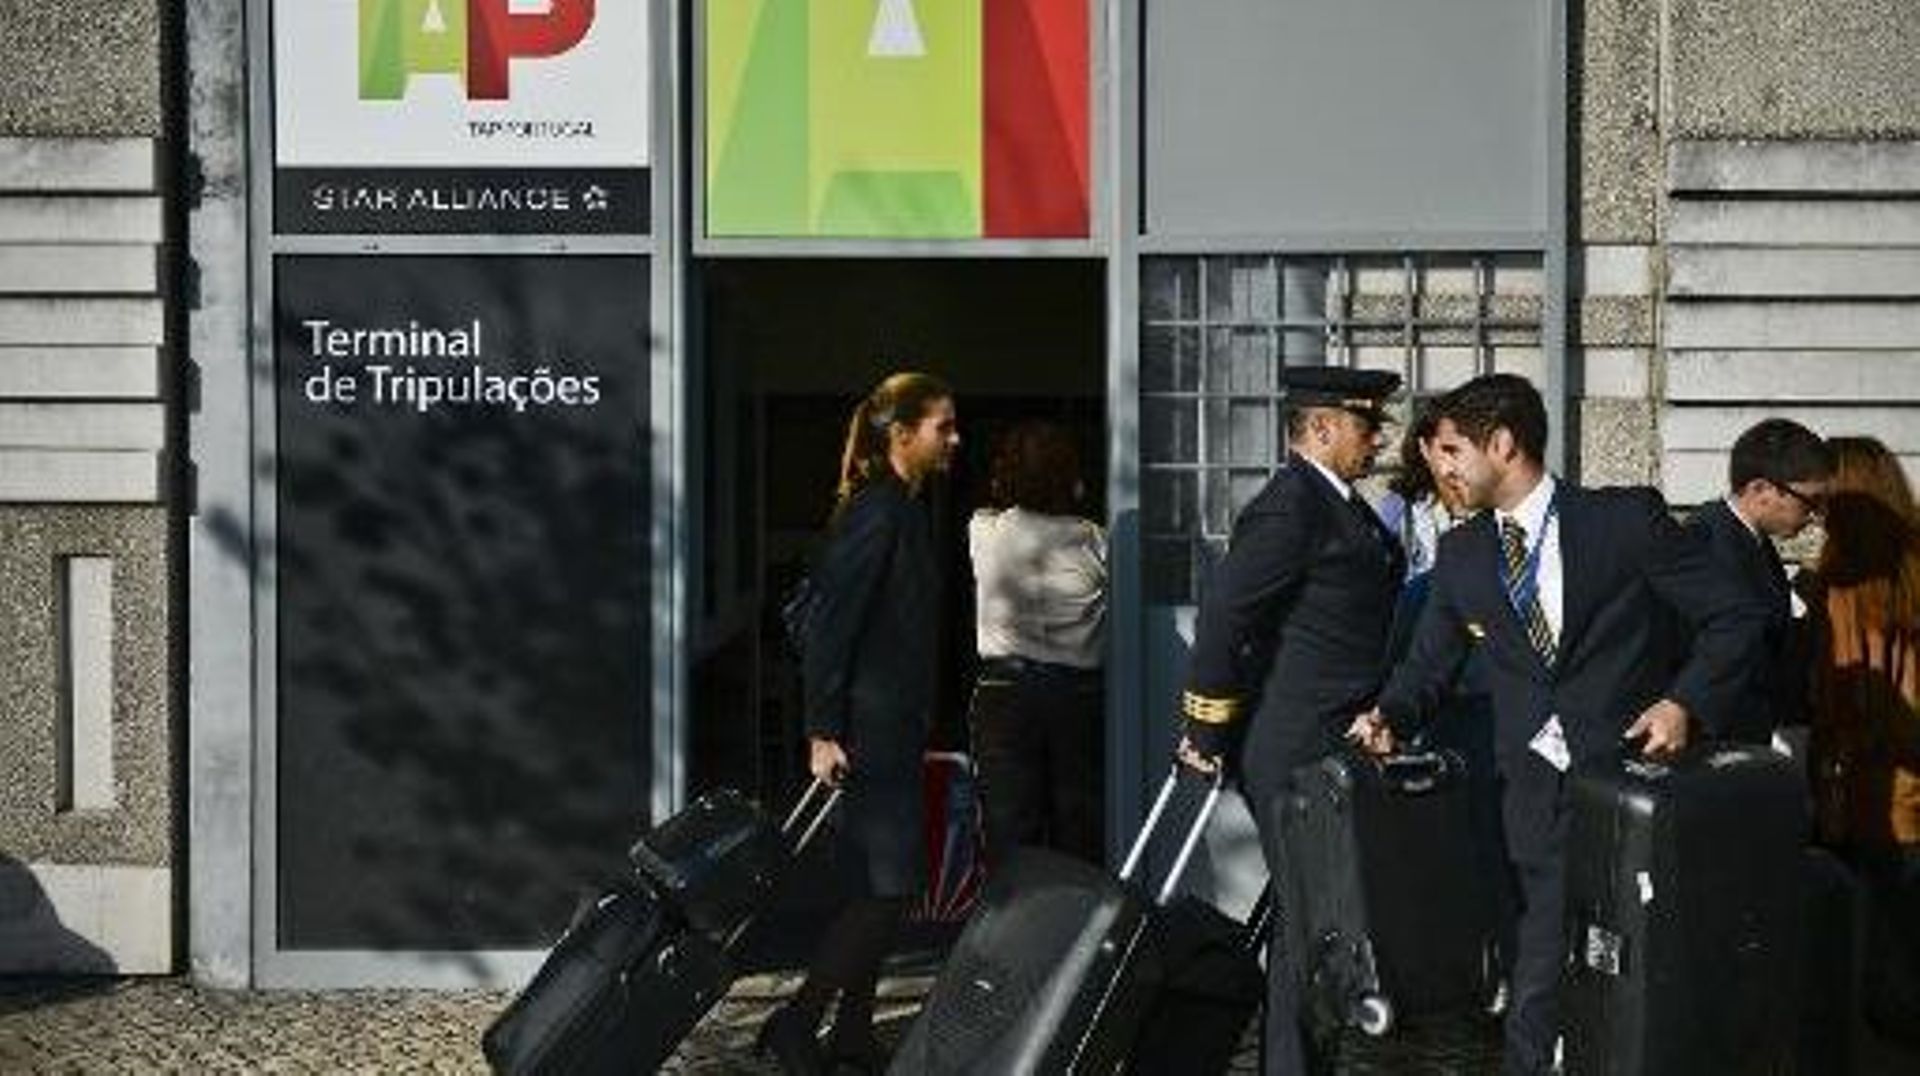 Le gouvernement portugais de centre droit décide de mettre en vente 66% du capital de la compagnie aérienne publique TAP Portugal